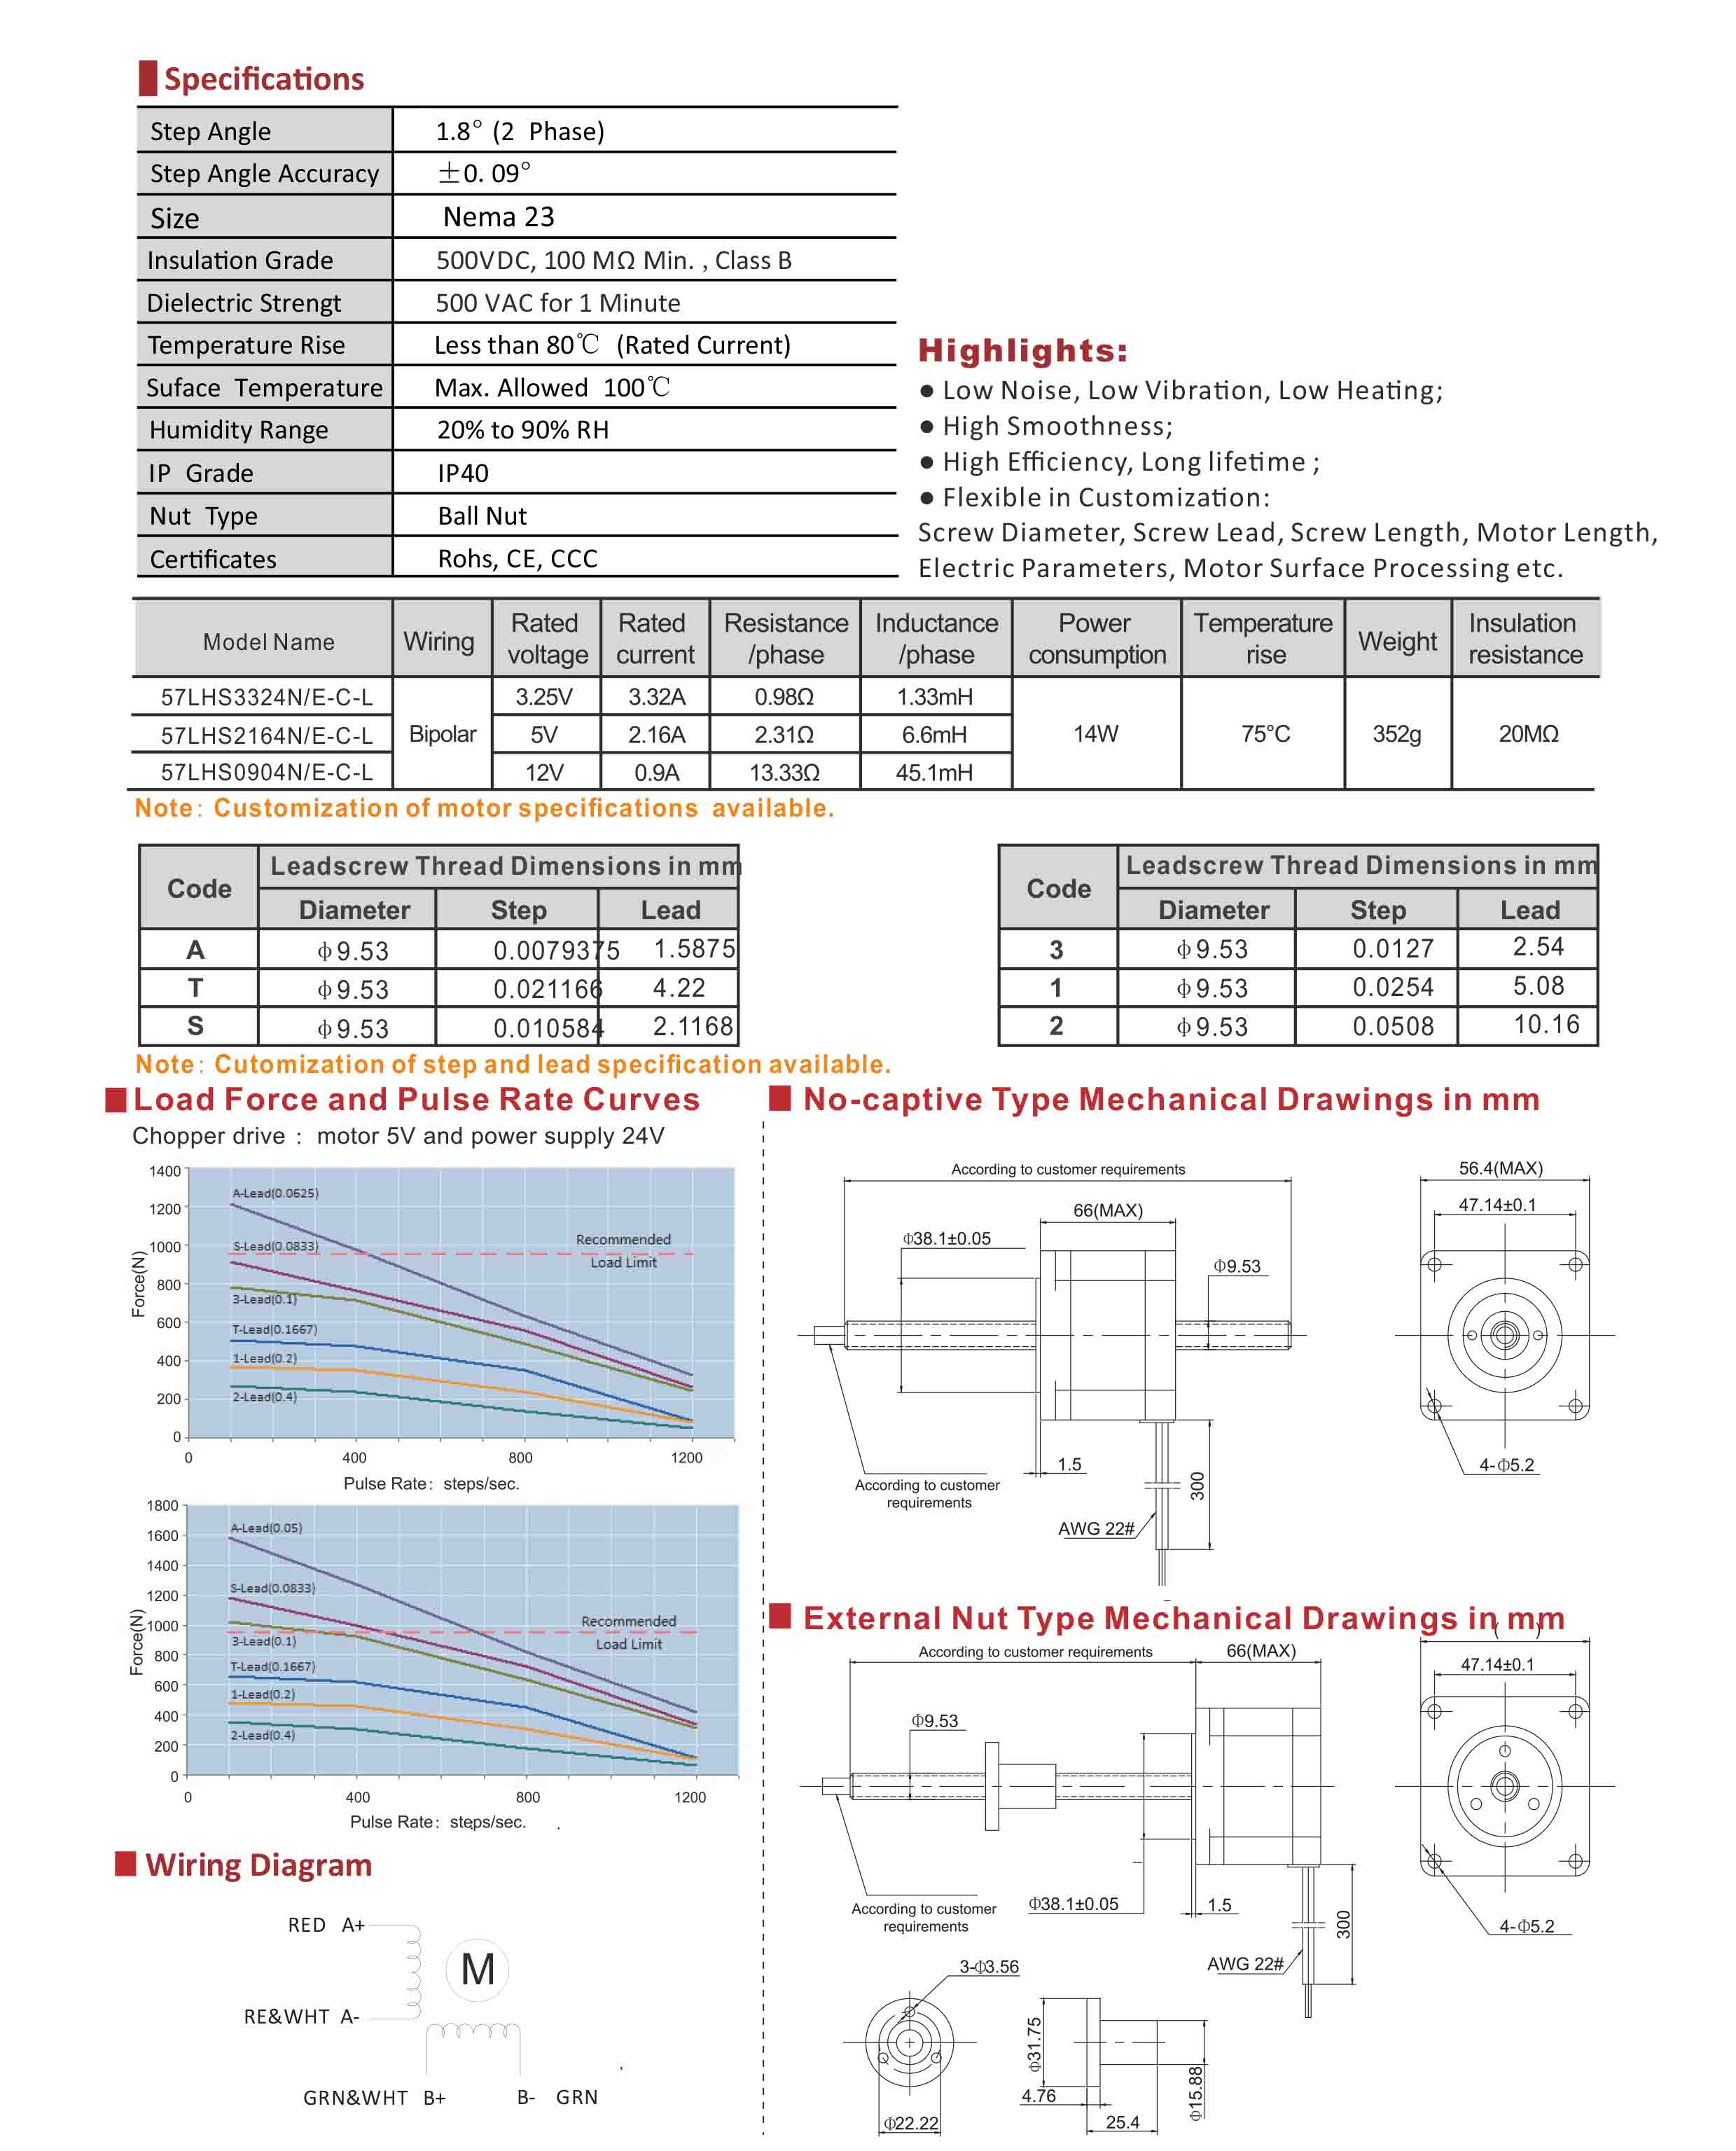 57LHS3324 2164 0904 Series Double Stack Hybrid Linear Stepper Motors Data Sheet.jpg